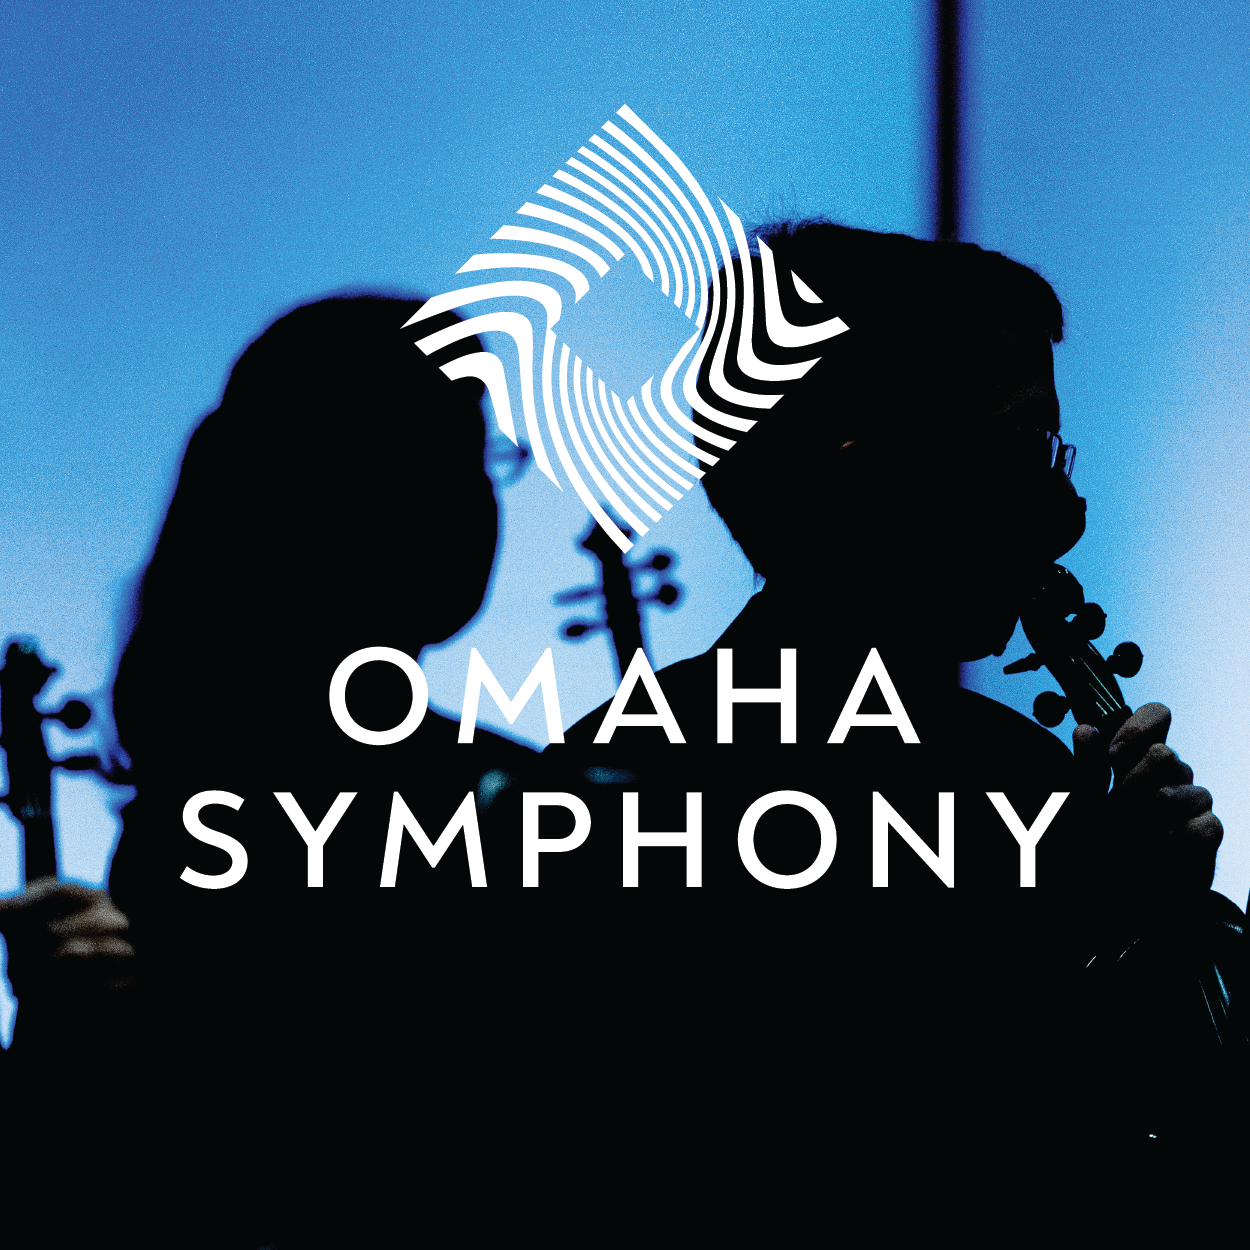 Omaha Symphony